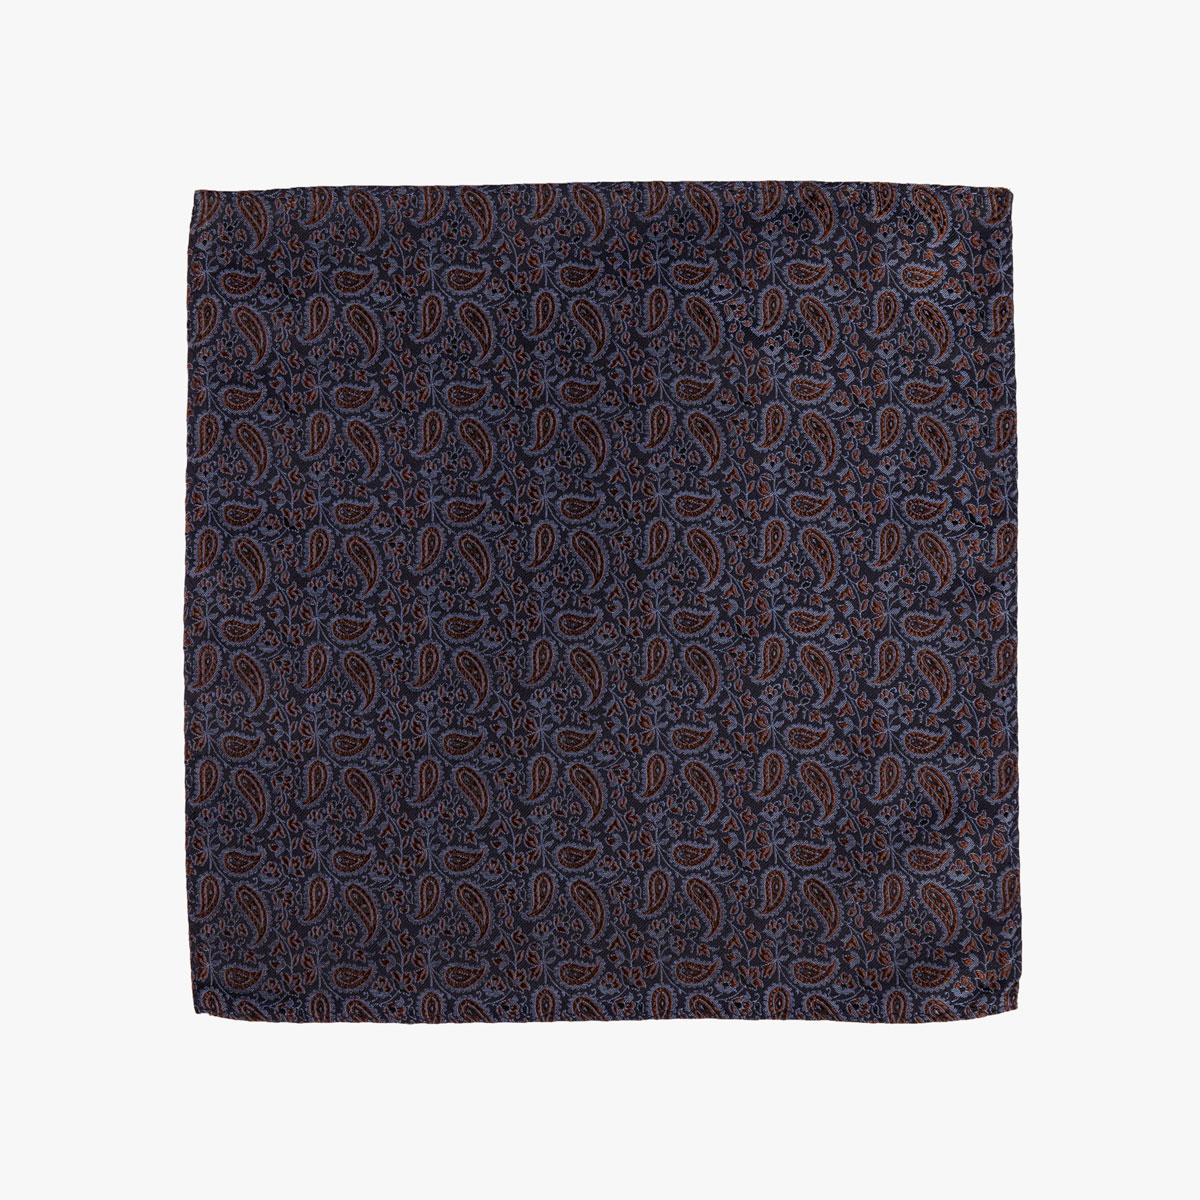 Einstecktuch mit Paisley Muster in Braun / Blau